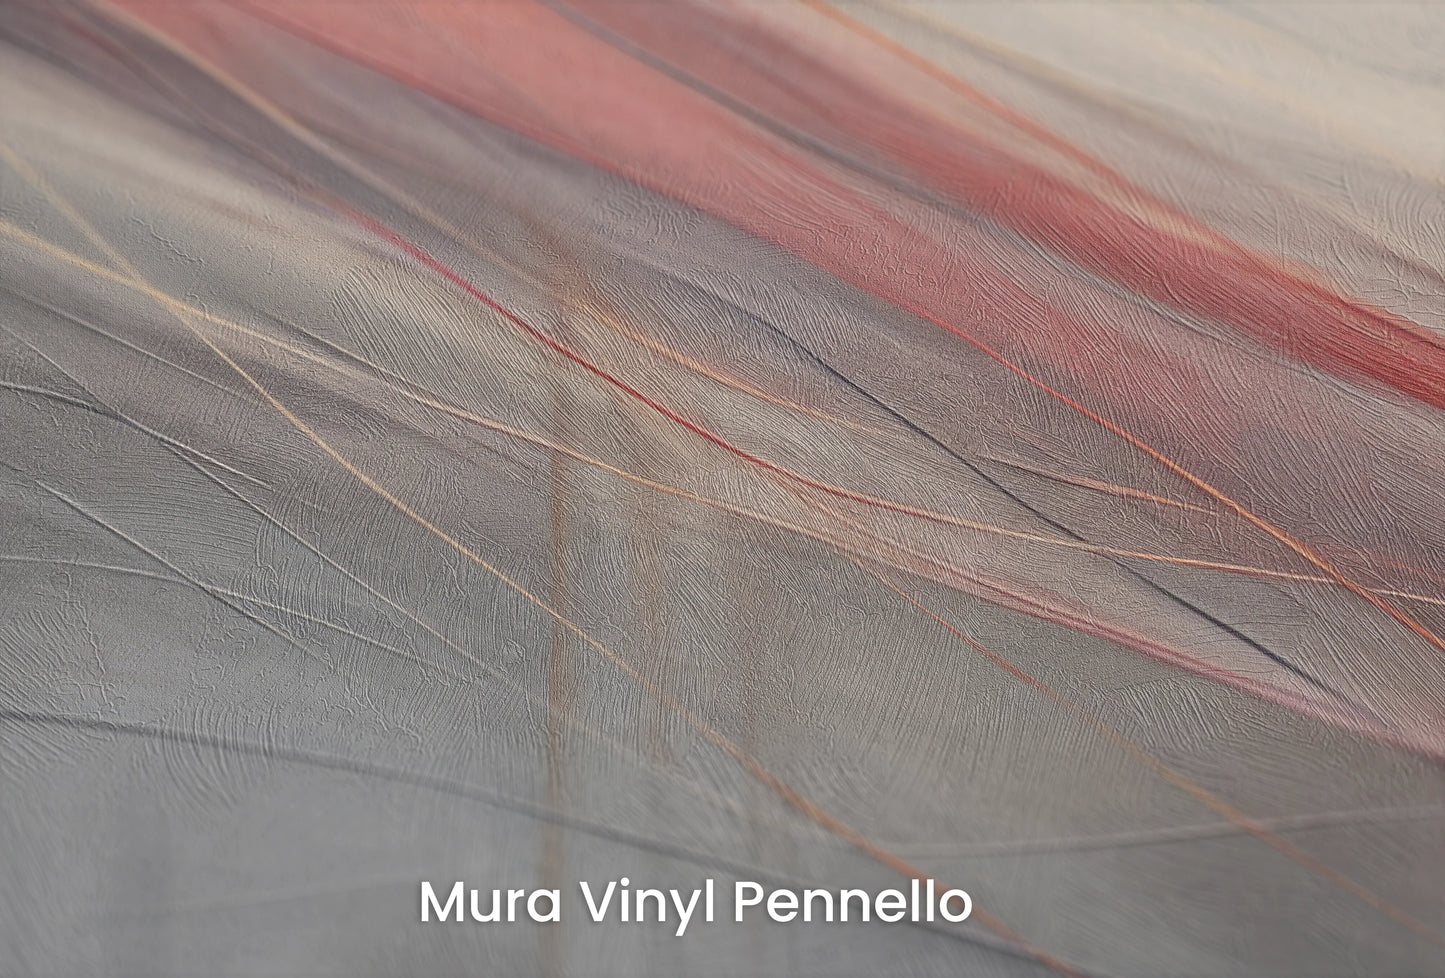 Zbliżenie na artystyczną fototapetę o nazwie Rustic Elegance na podłożu Mura Vinyl Pennello - faktura pociągnięć pędzla malarskiego.